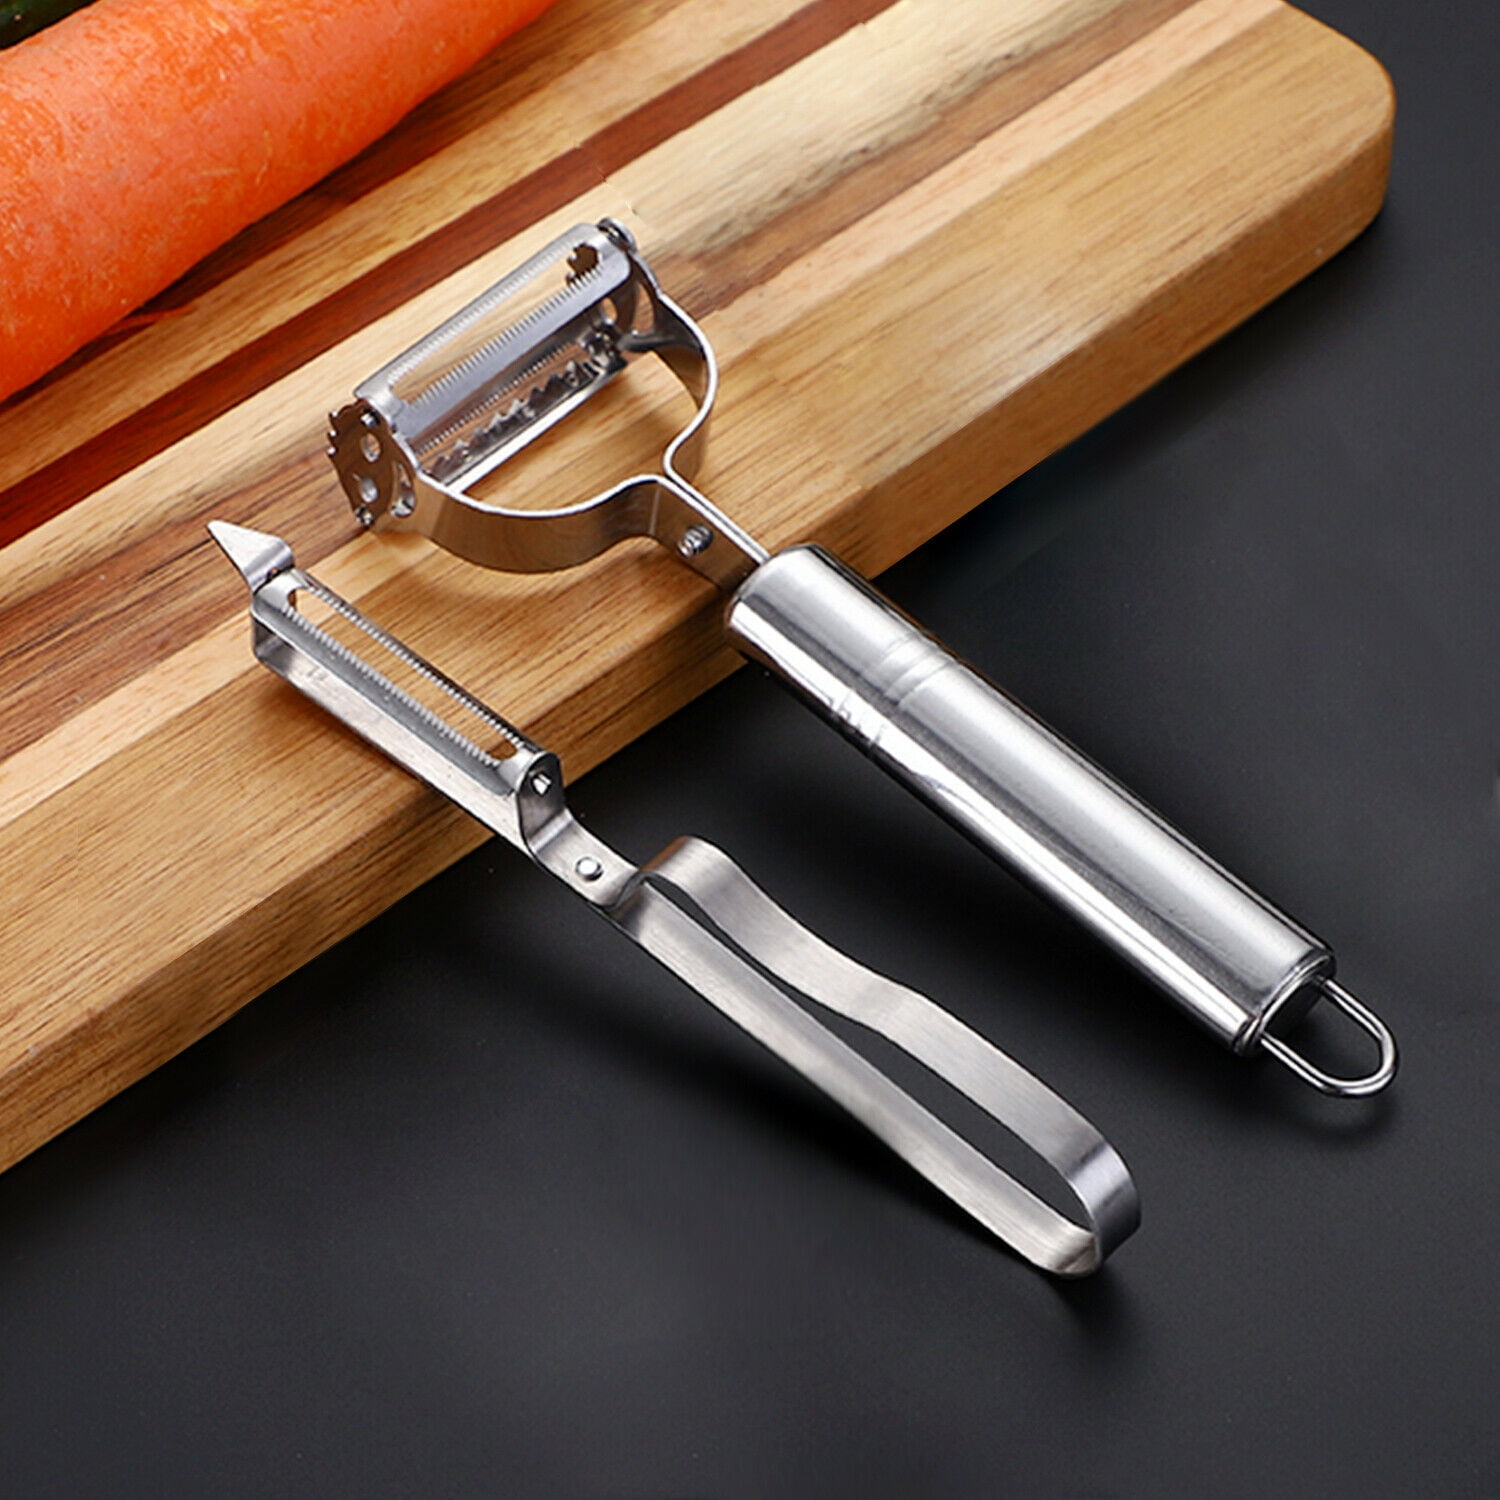 2pcs Stainless Steel Carrot Potato Fruit Peeler Vegetable Grater Kitchen tool  R 